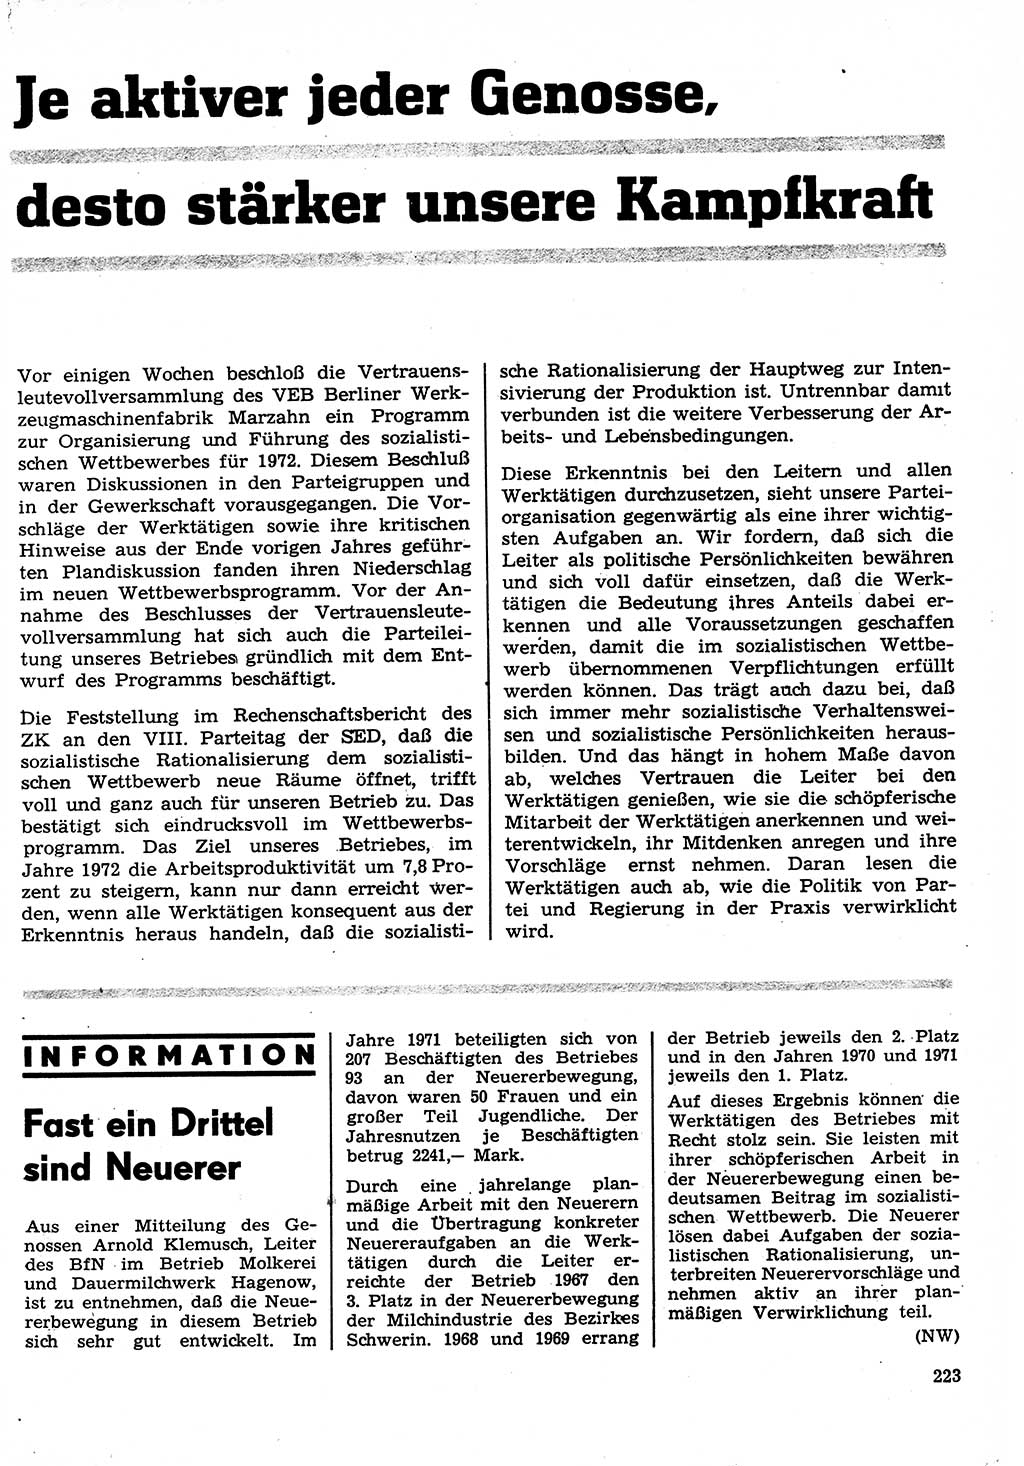 Neuer Weg (NW), Organ des Zentralkomitees (ZK) der SED (Sozialistische Einheitspartei Deutschlands) für Fragen des Parteilebens, 27. Jahrgang [Deutsche Demokratische Republik (DDR)] 1972, Seite 223 (NW ZK SED DDR 1972, S. 223)